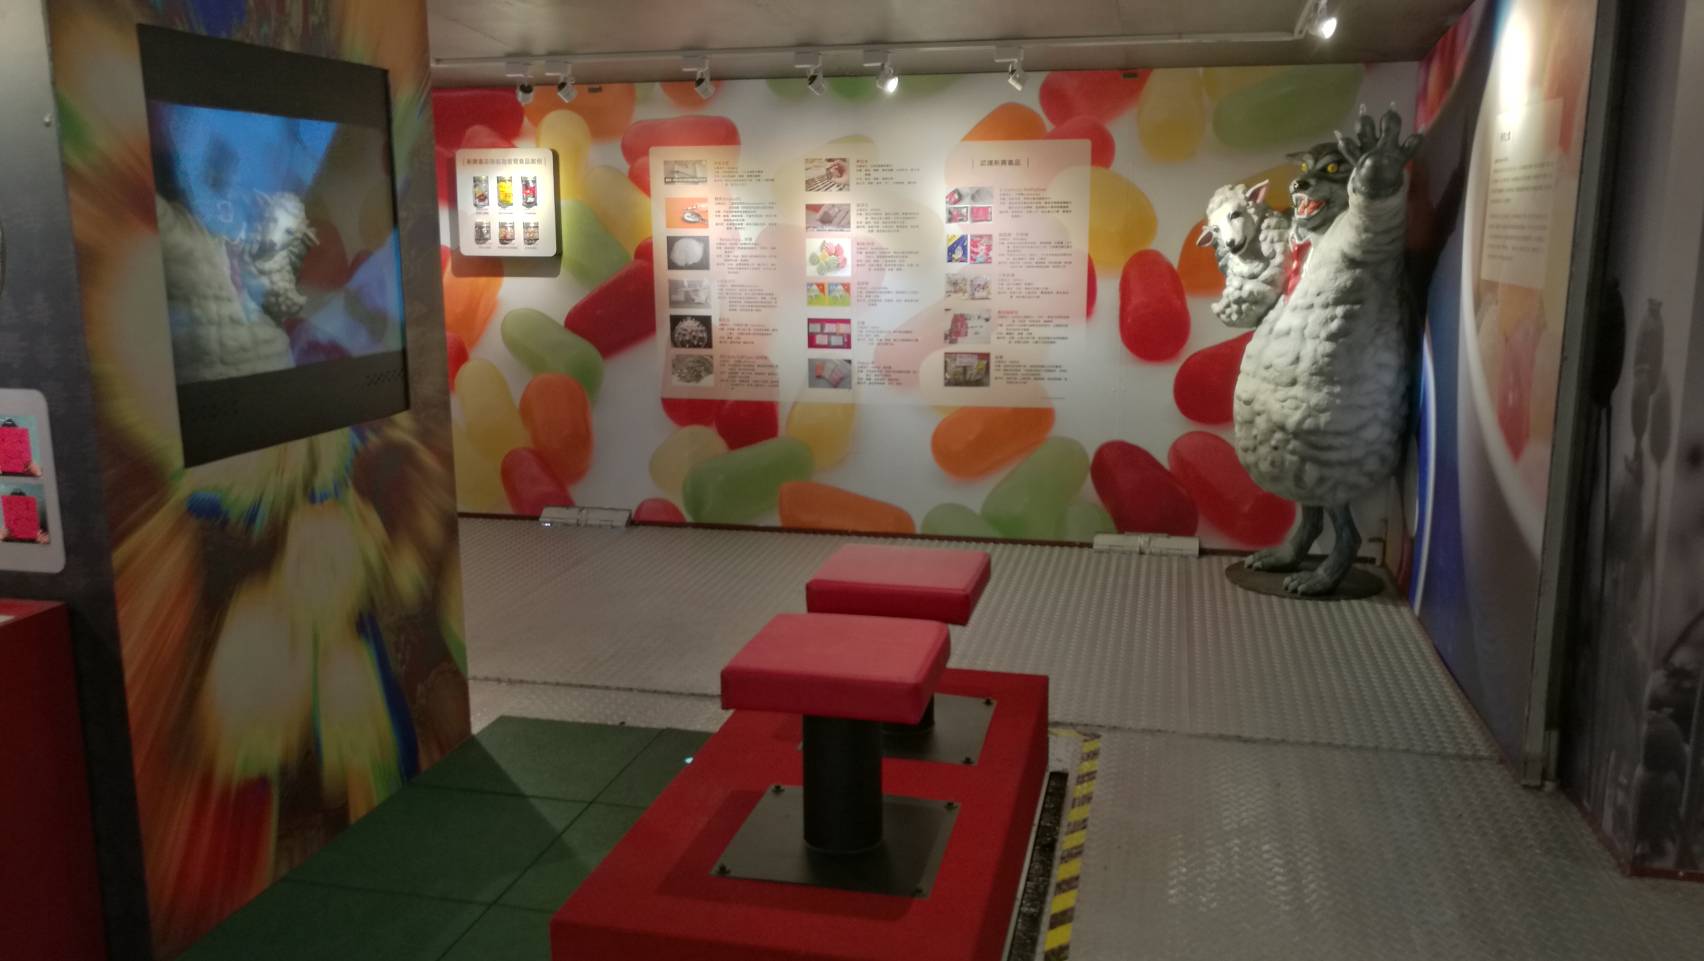 「藥不藥．一念間」反毒行動博物館特展於捷運西門站1號出口廣場展出至6月15日止(免費參展)